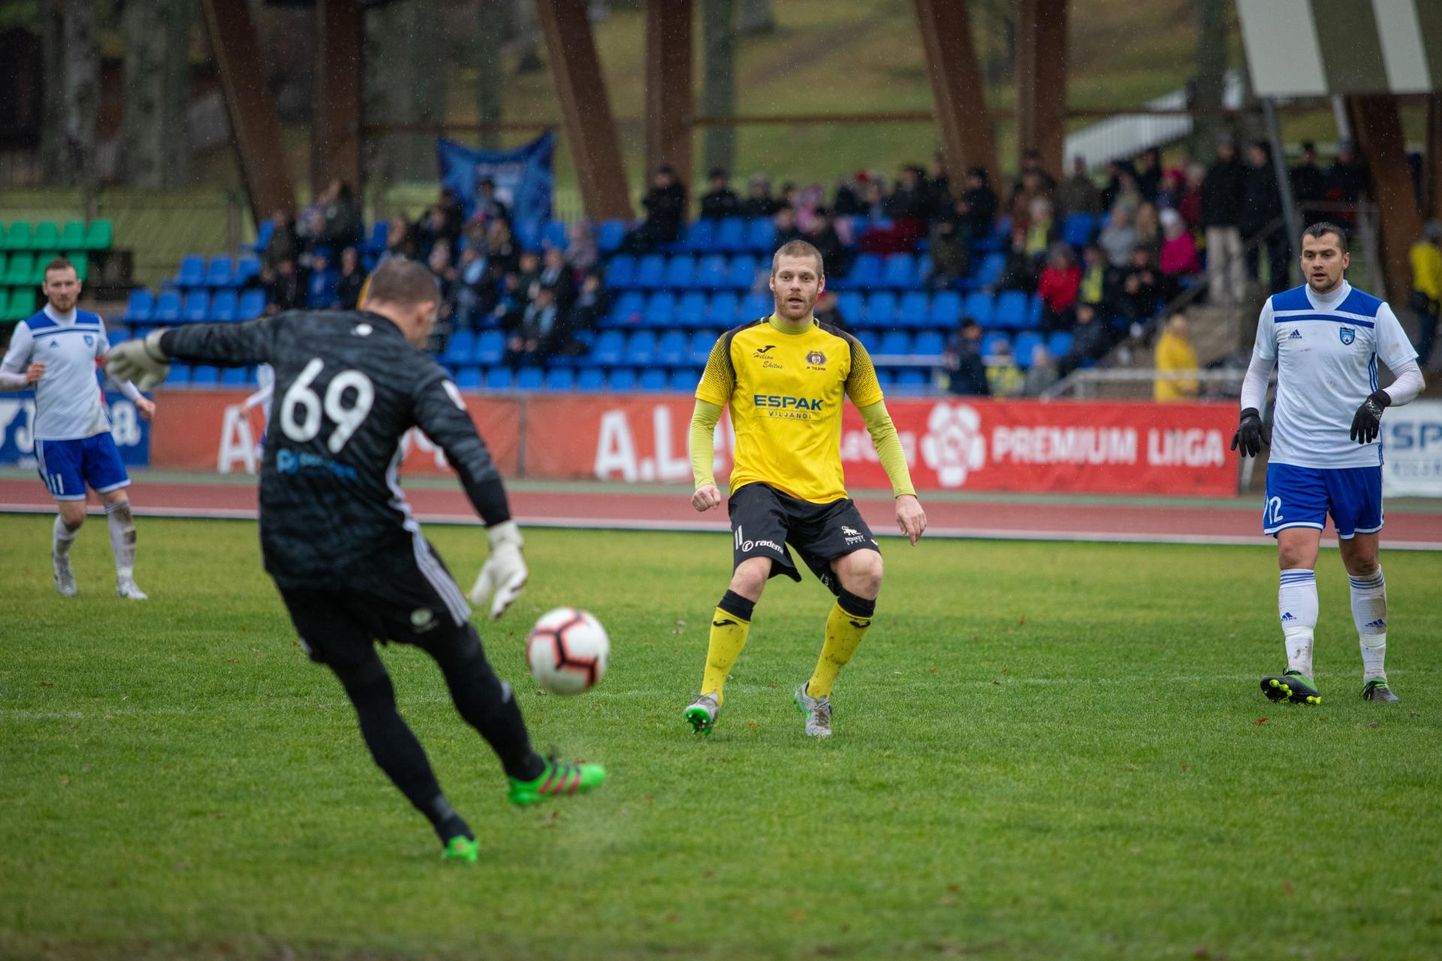 Viljandi Tuleviku kapten Kaimar Saag oli Premium-liigas paremuselt kolmas väravakütt: koduse meistriliiga debüüthooajal sahises värav tema jalast 13 korda.